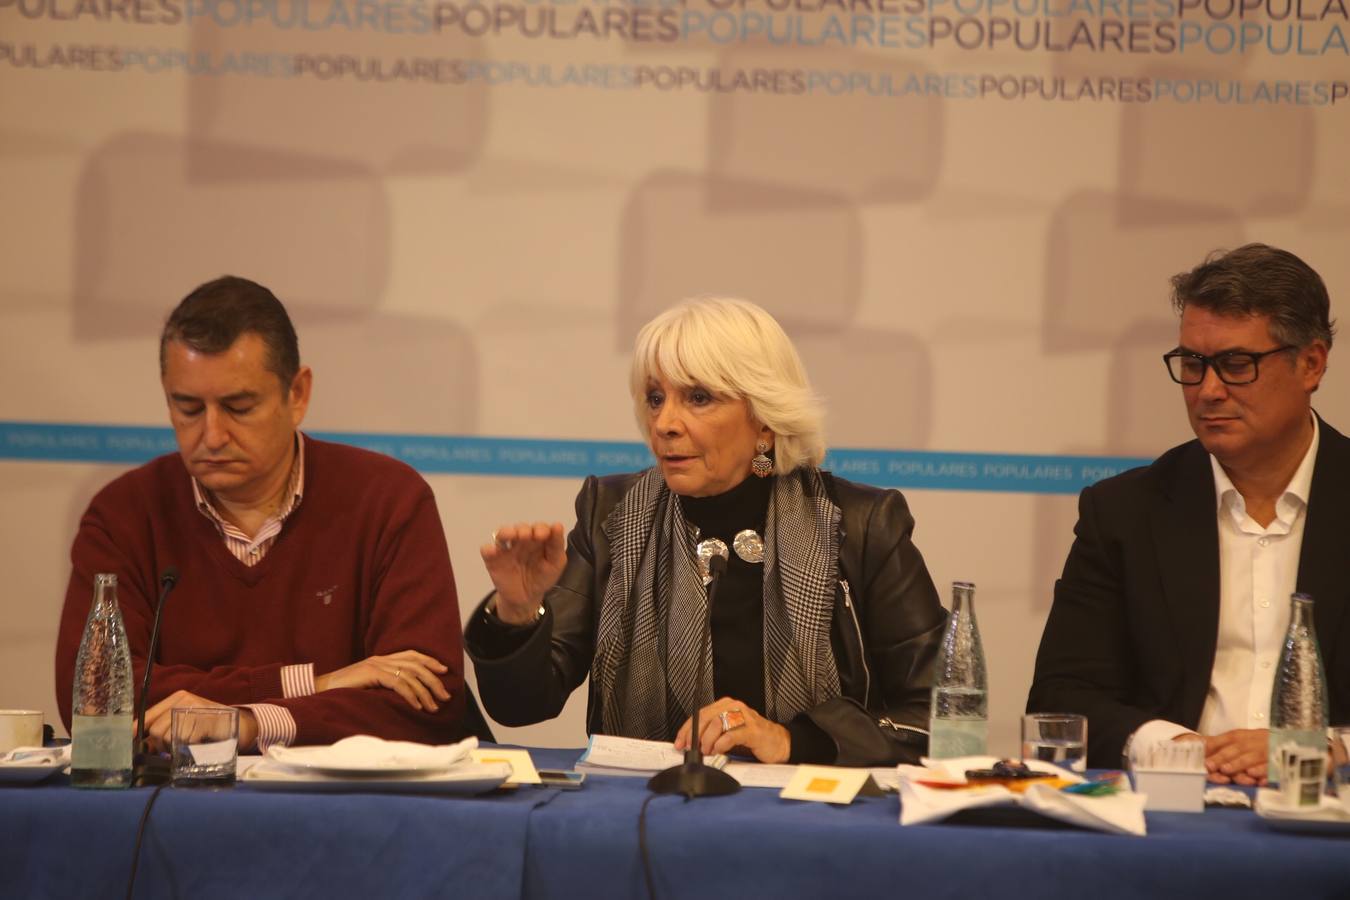 FOTOS: Teófila Martínez no será la candidata del PP en Cádiz